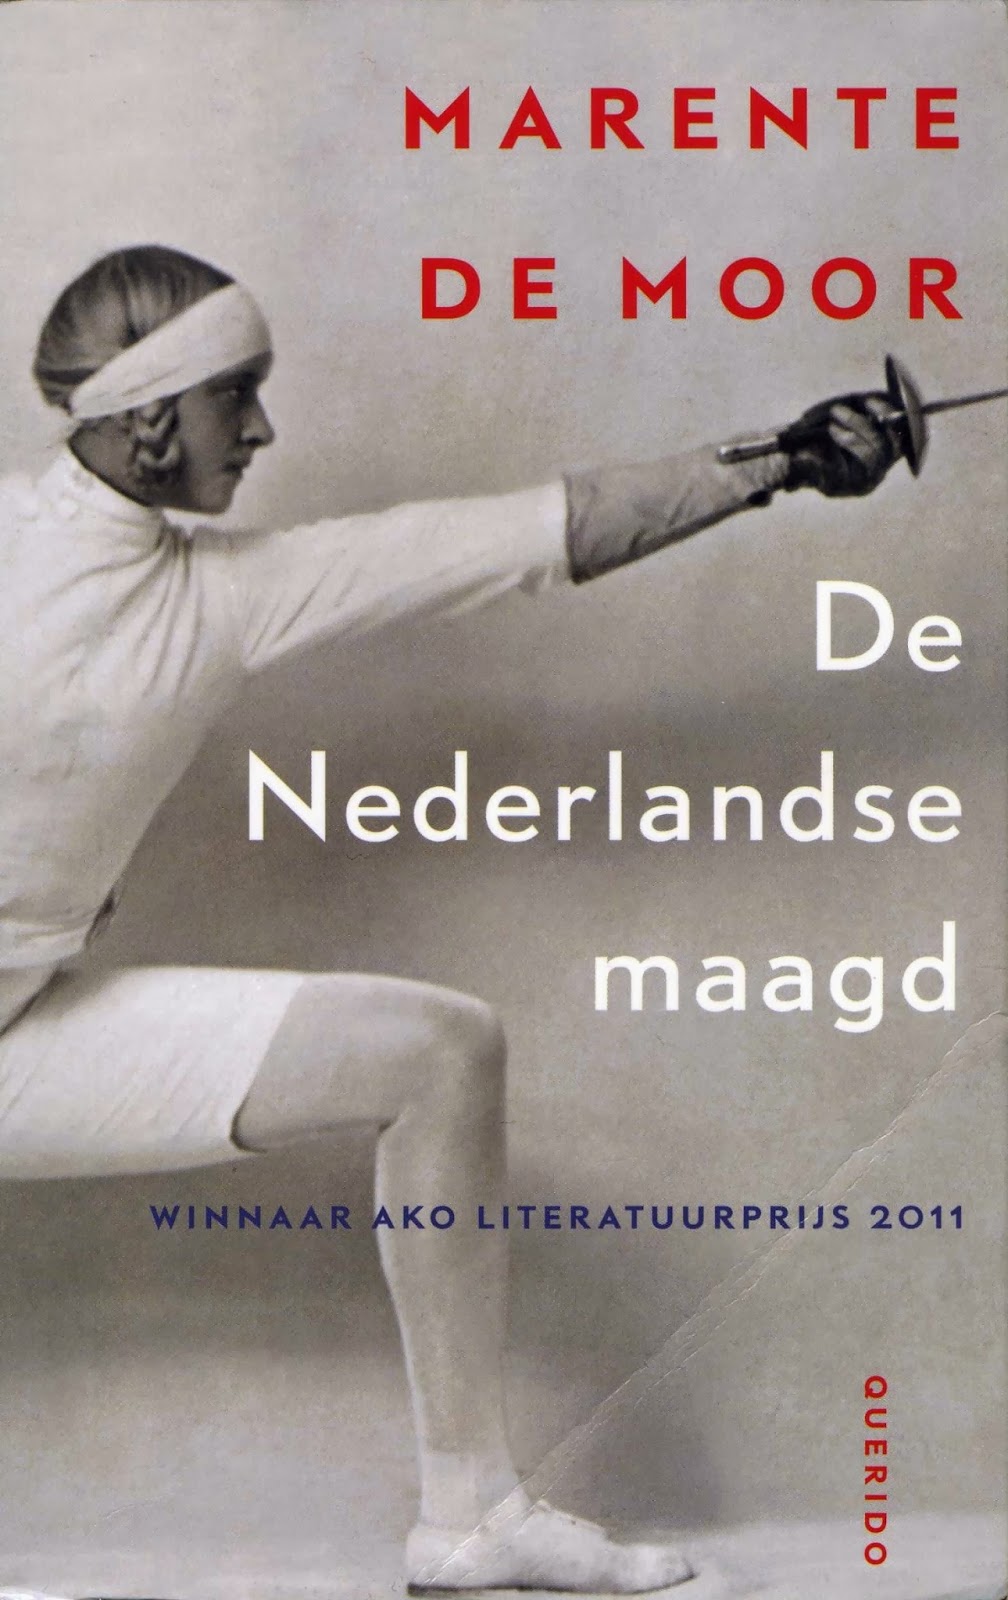 RÃ©sultat de recherche d'images pour "marente de moor de nederlandse maagd"